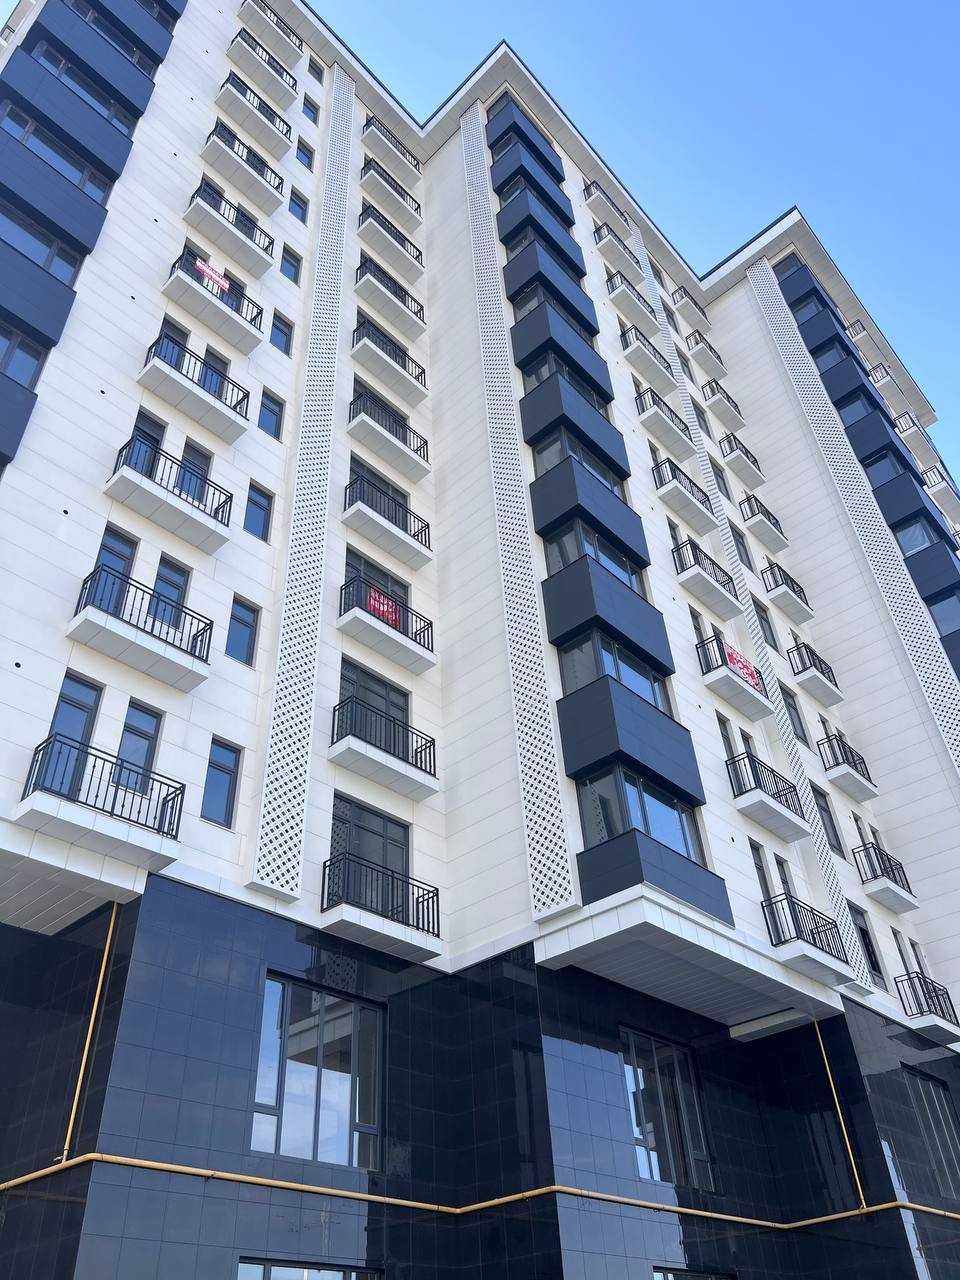 Новостройка Nurafshon Avenue 2 комнатная 11 этаж 62м2 (Балкон)